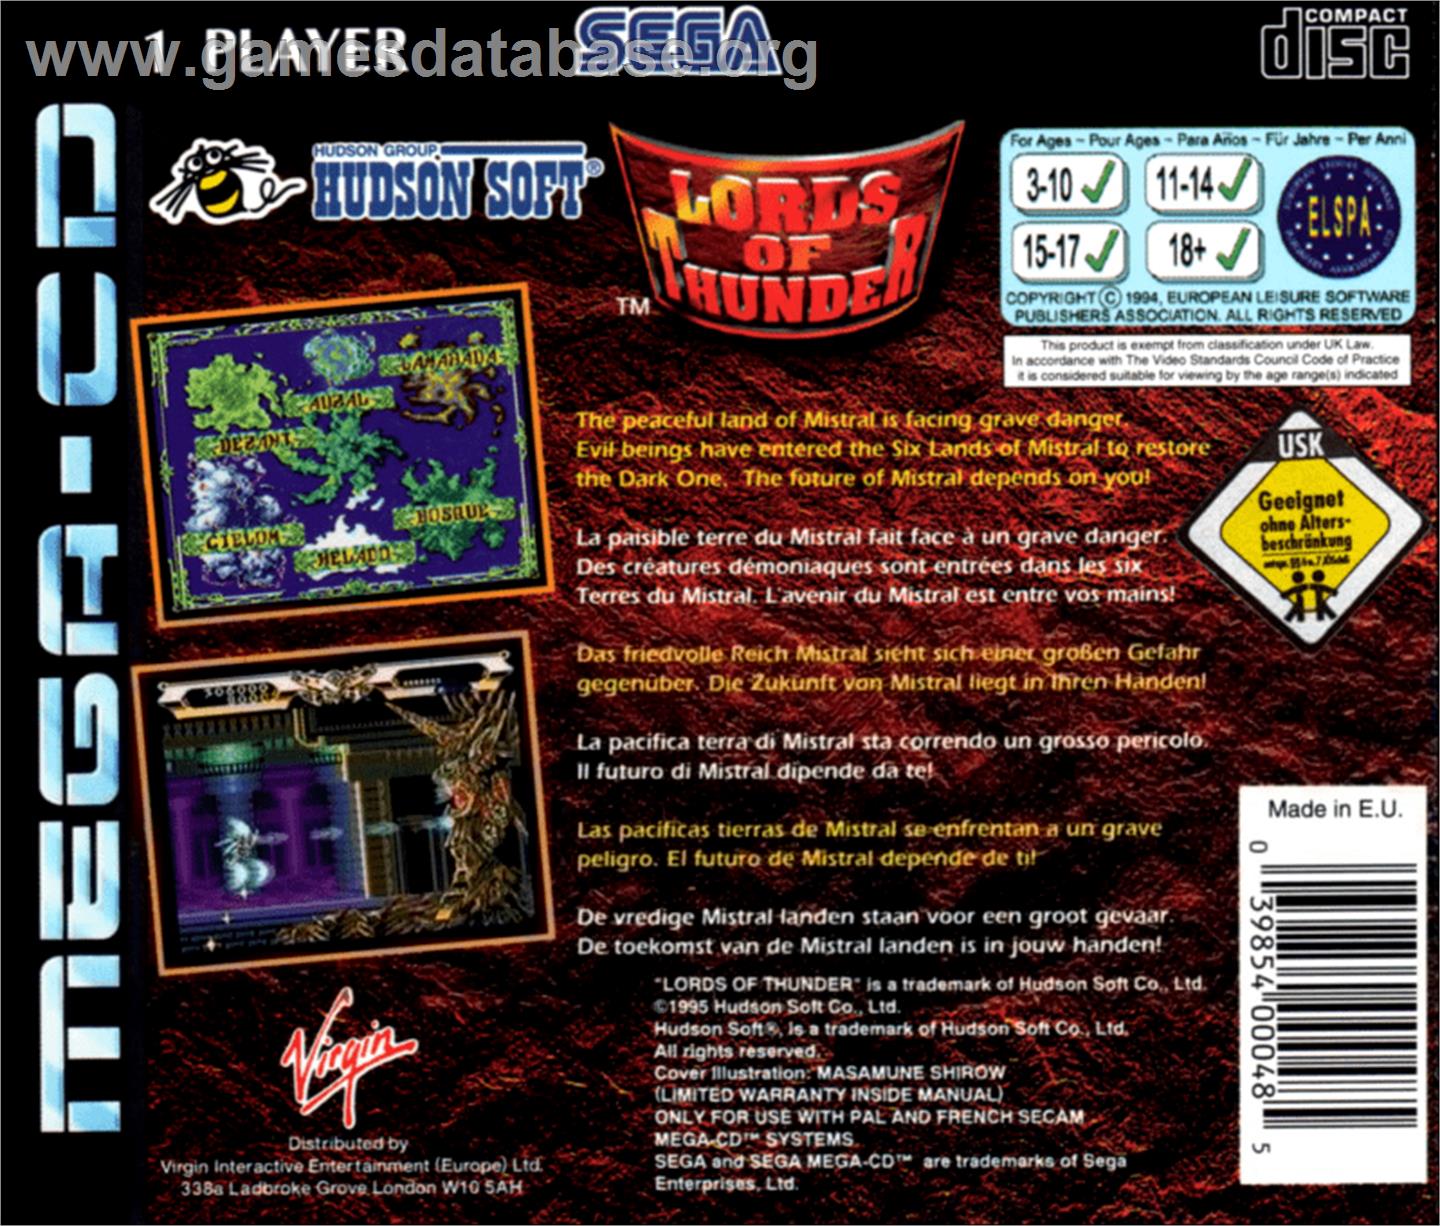 Lords of Thunder - Sega CD - Artwork - Box Back